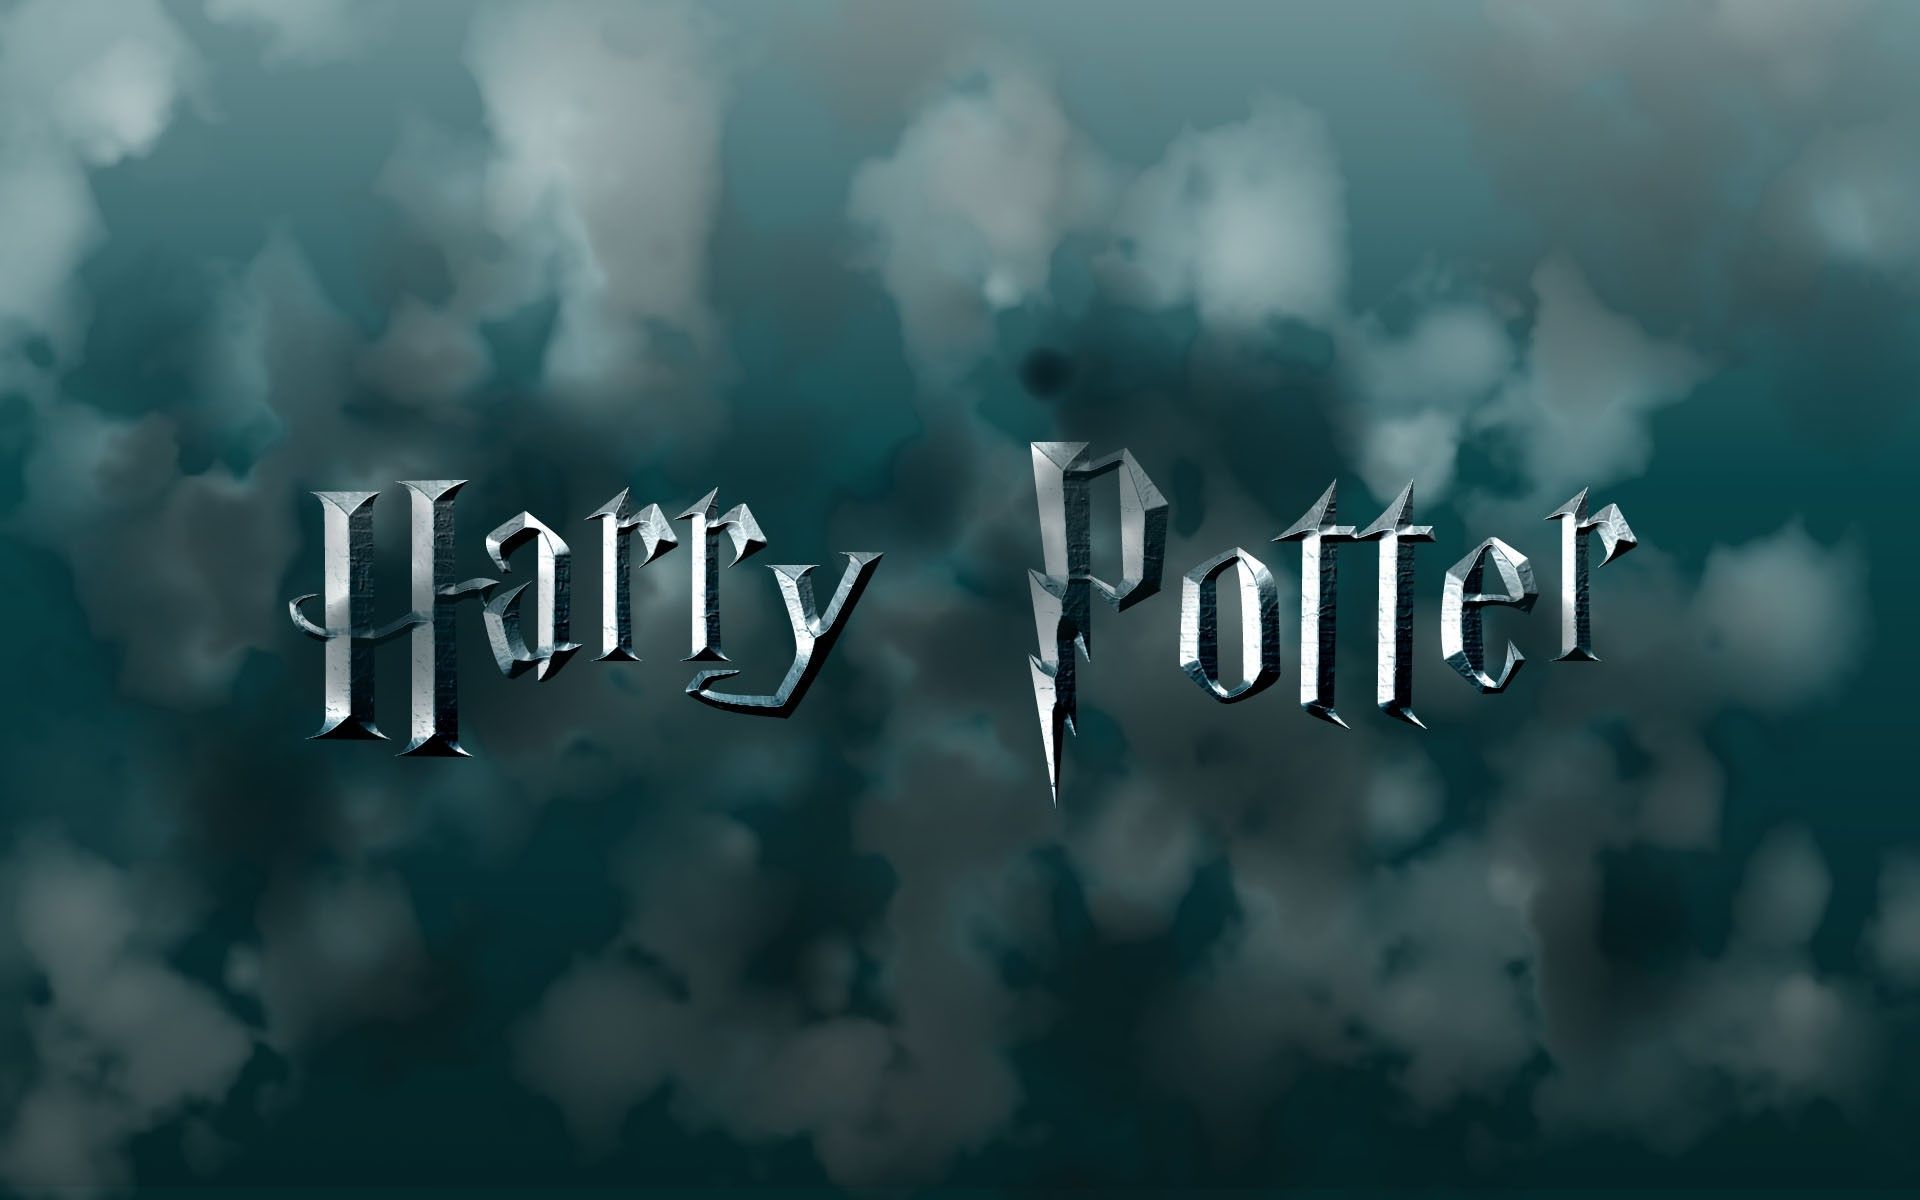 Fondos de Harry Potter - Los mejores fondos de Harry Potter gratis